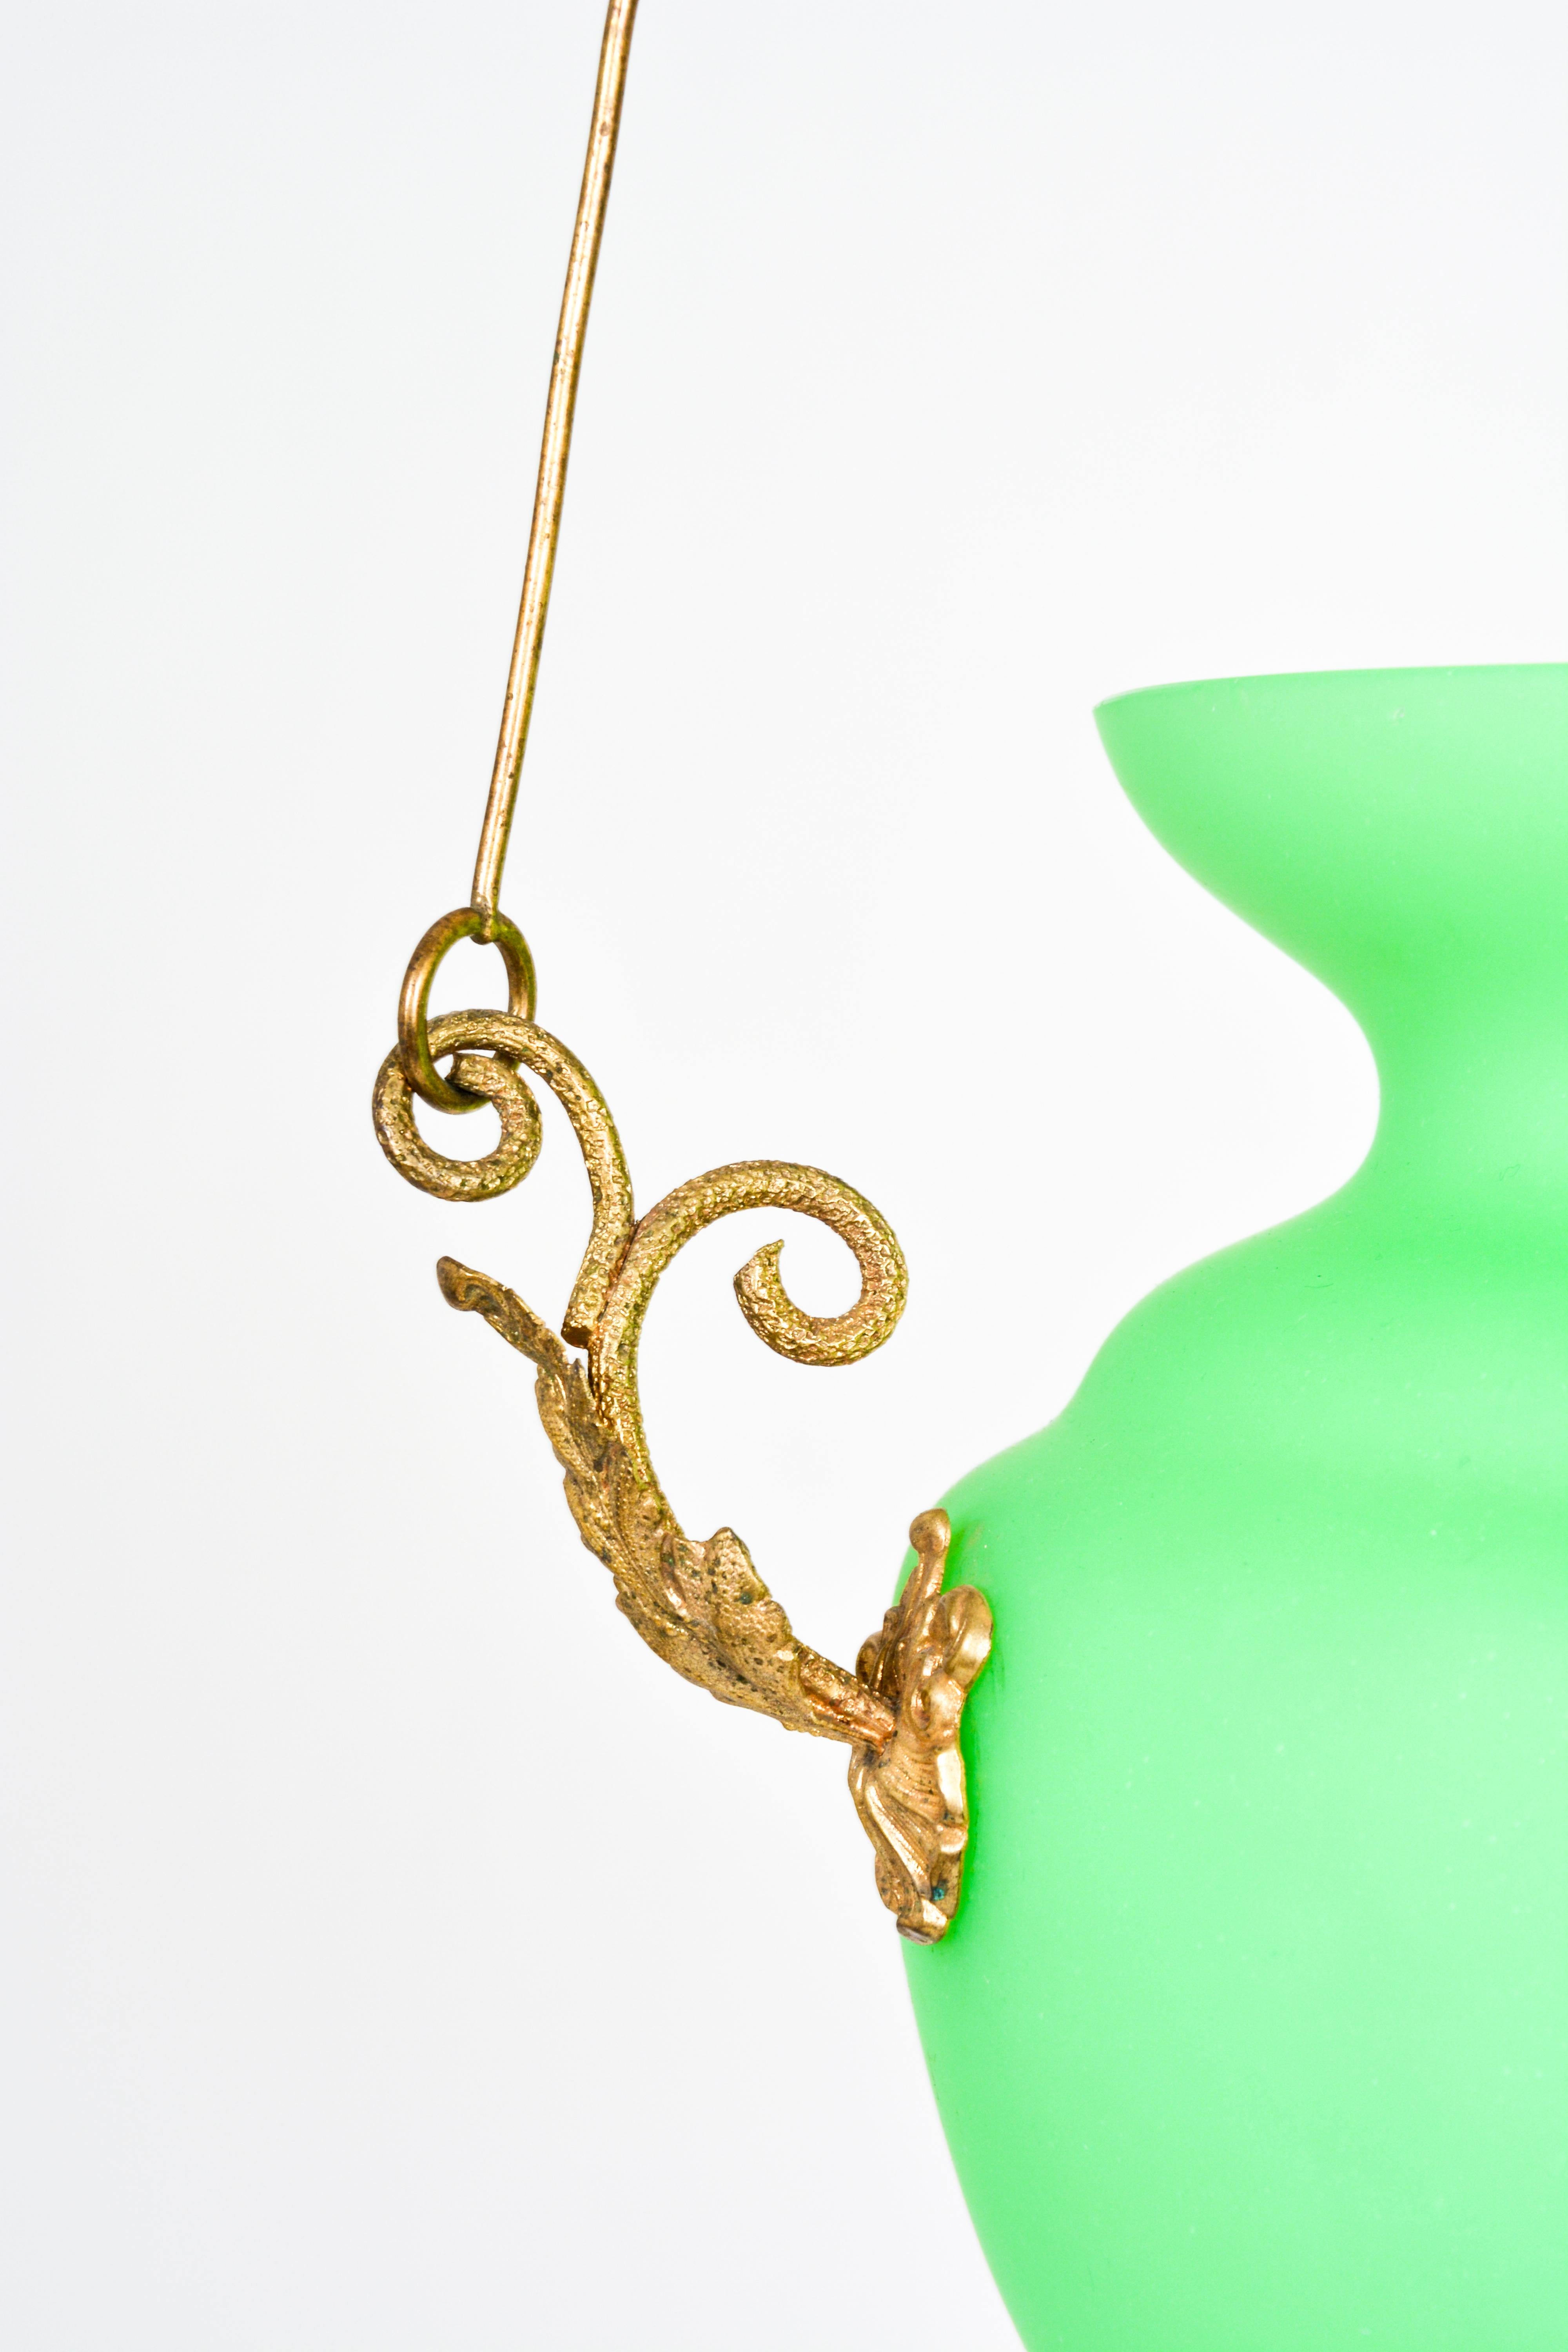 Austrian Lobmeyr Restored Biedermeier Green Glass Pendant Lamp Vessel For Sale